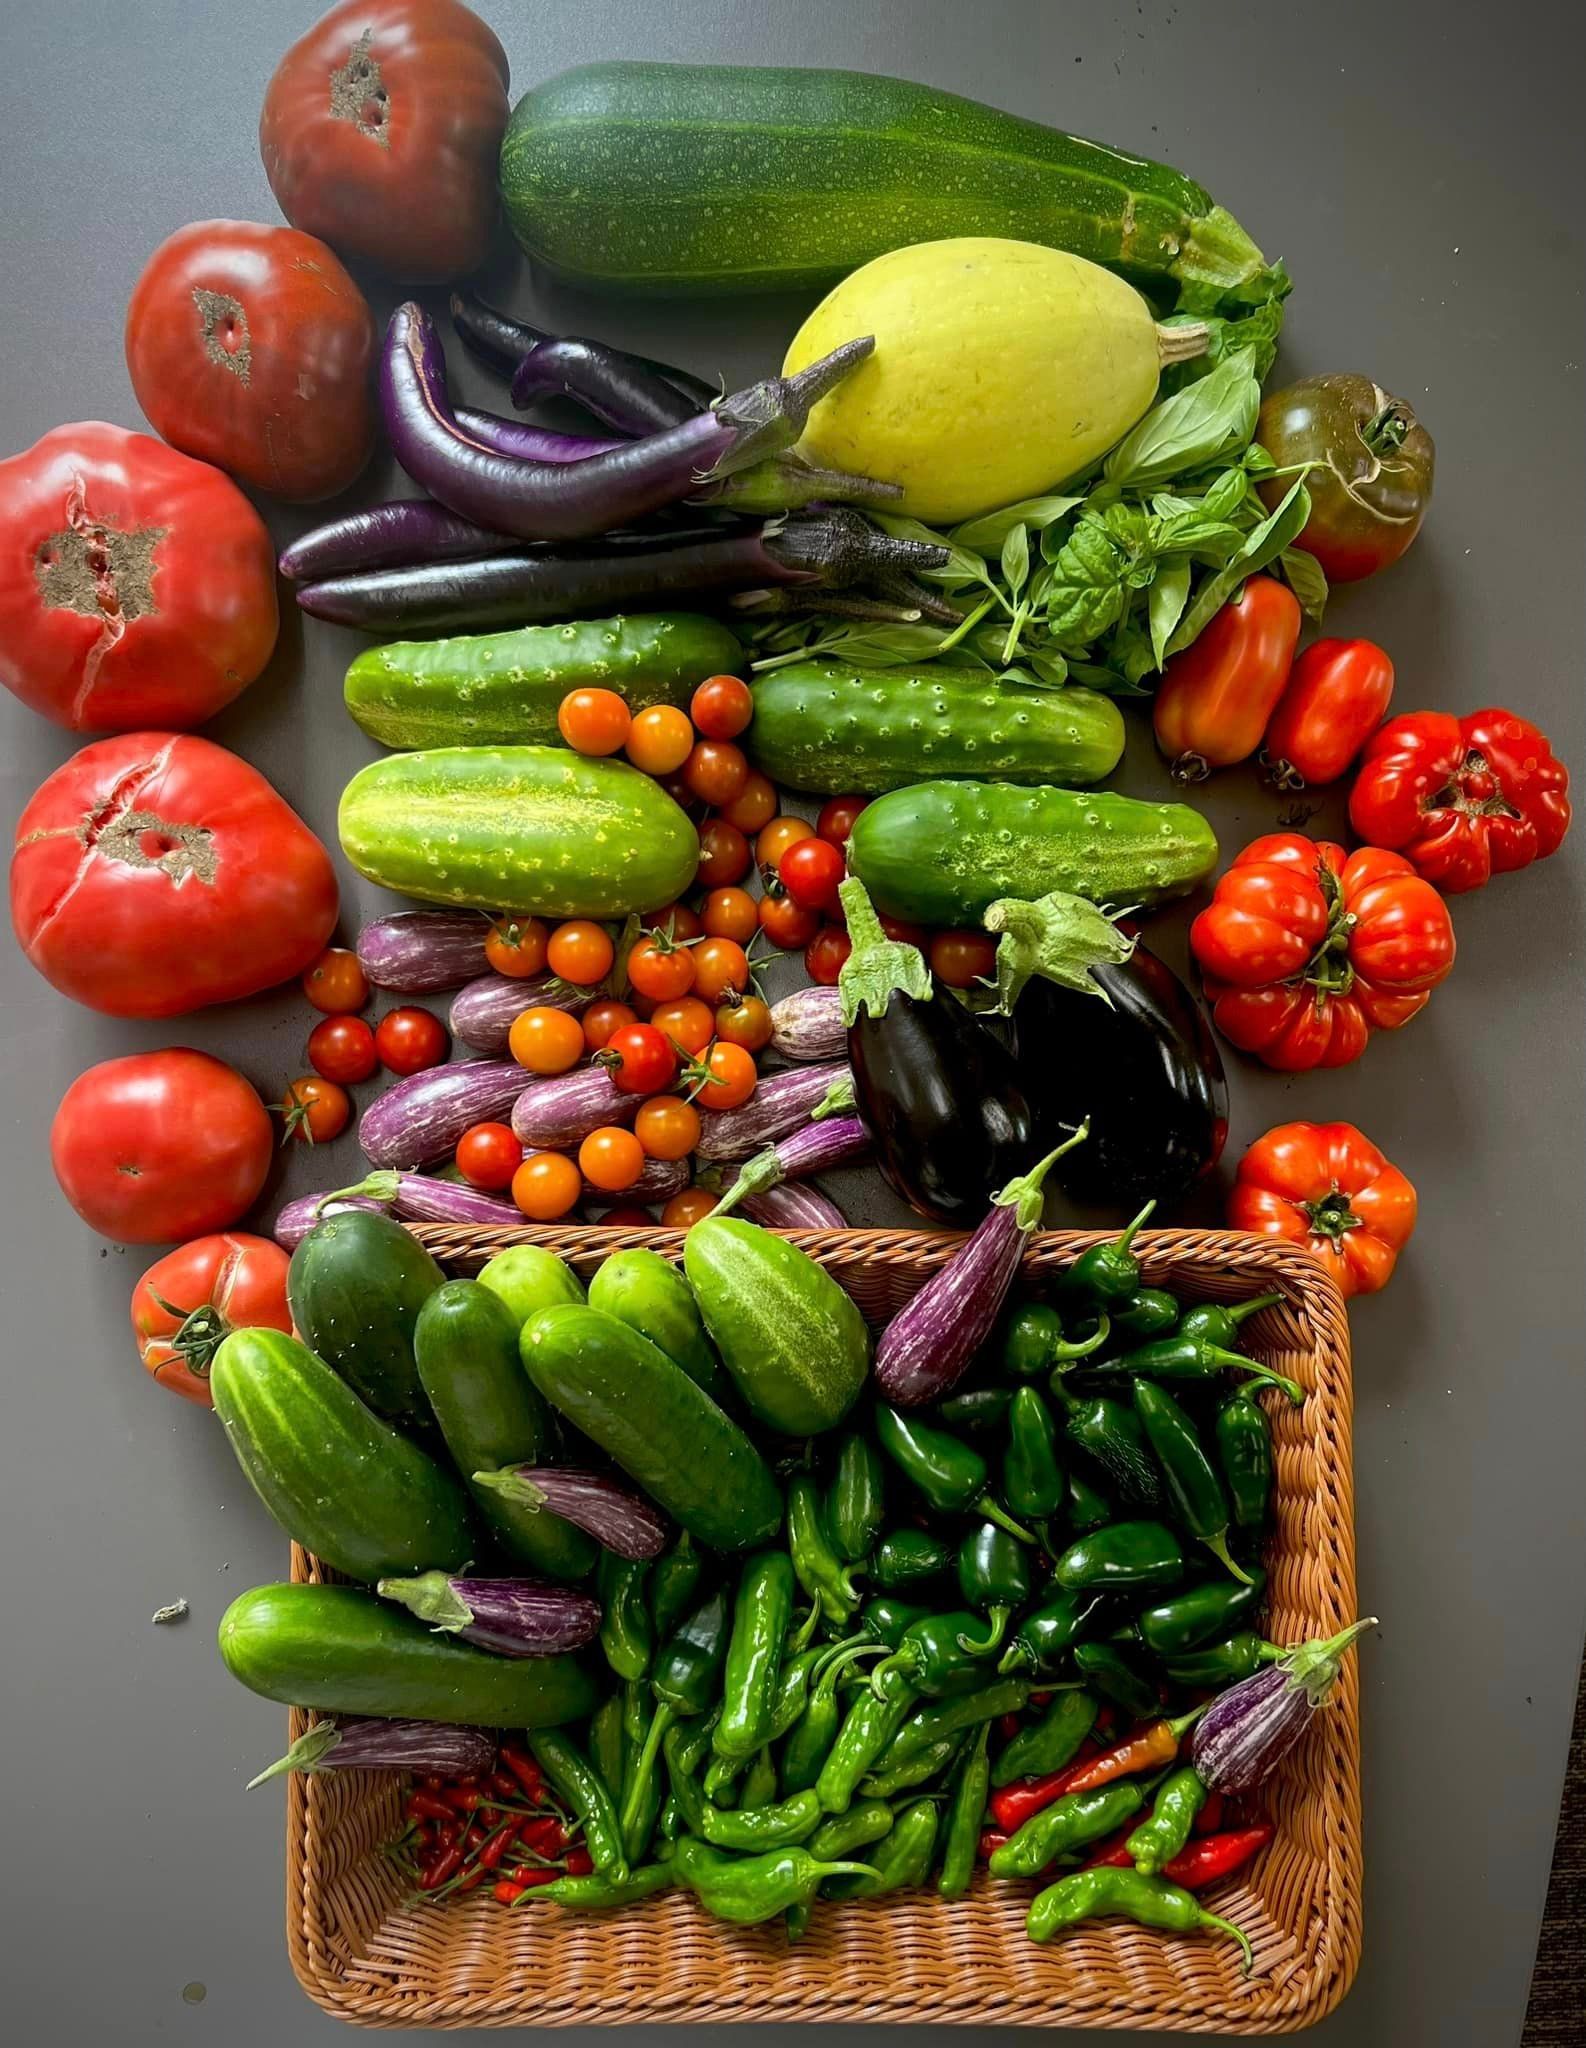 Vegetables using neptune's harvest